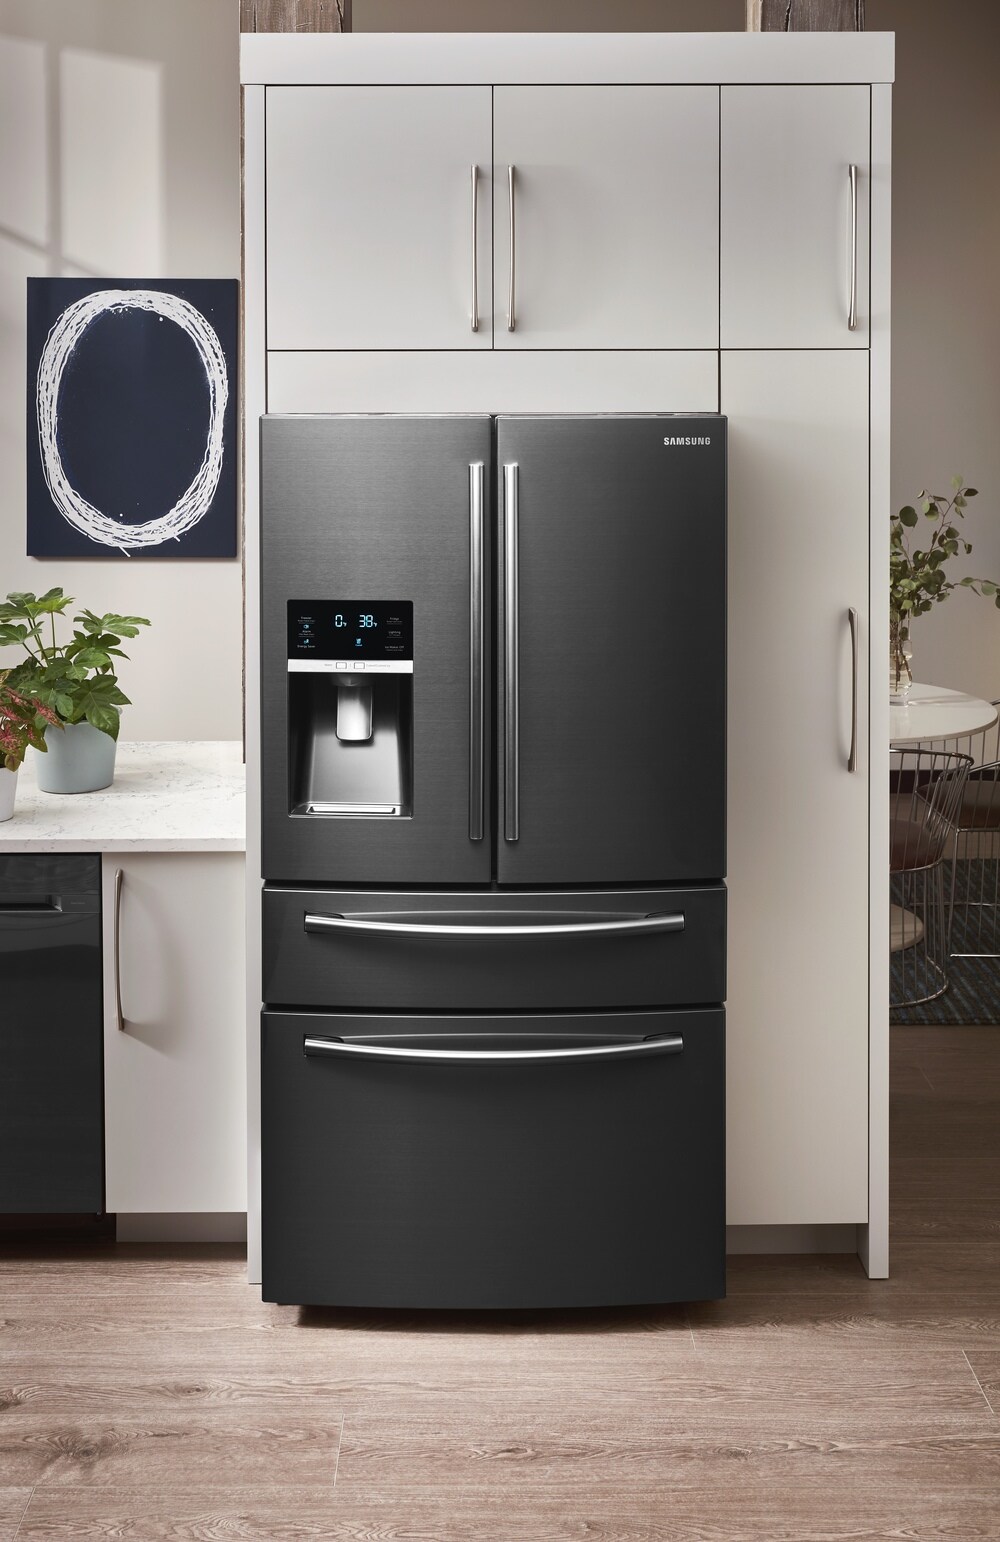 Samsung 28.15-cu ft 4-Door French Door Refrigerator with Ice Maker ...